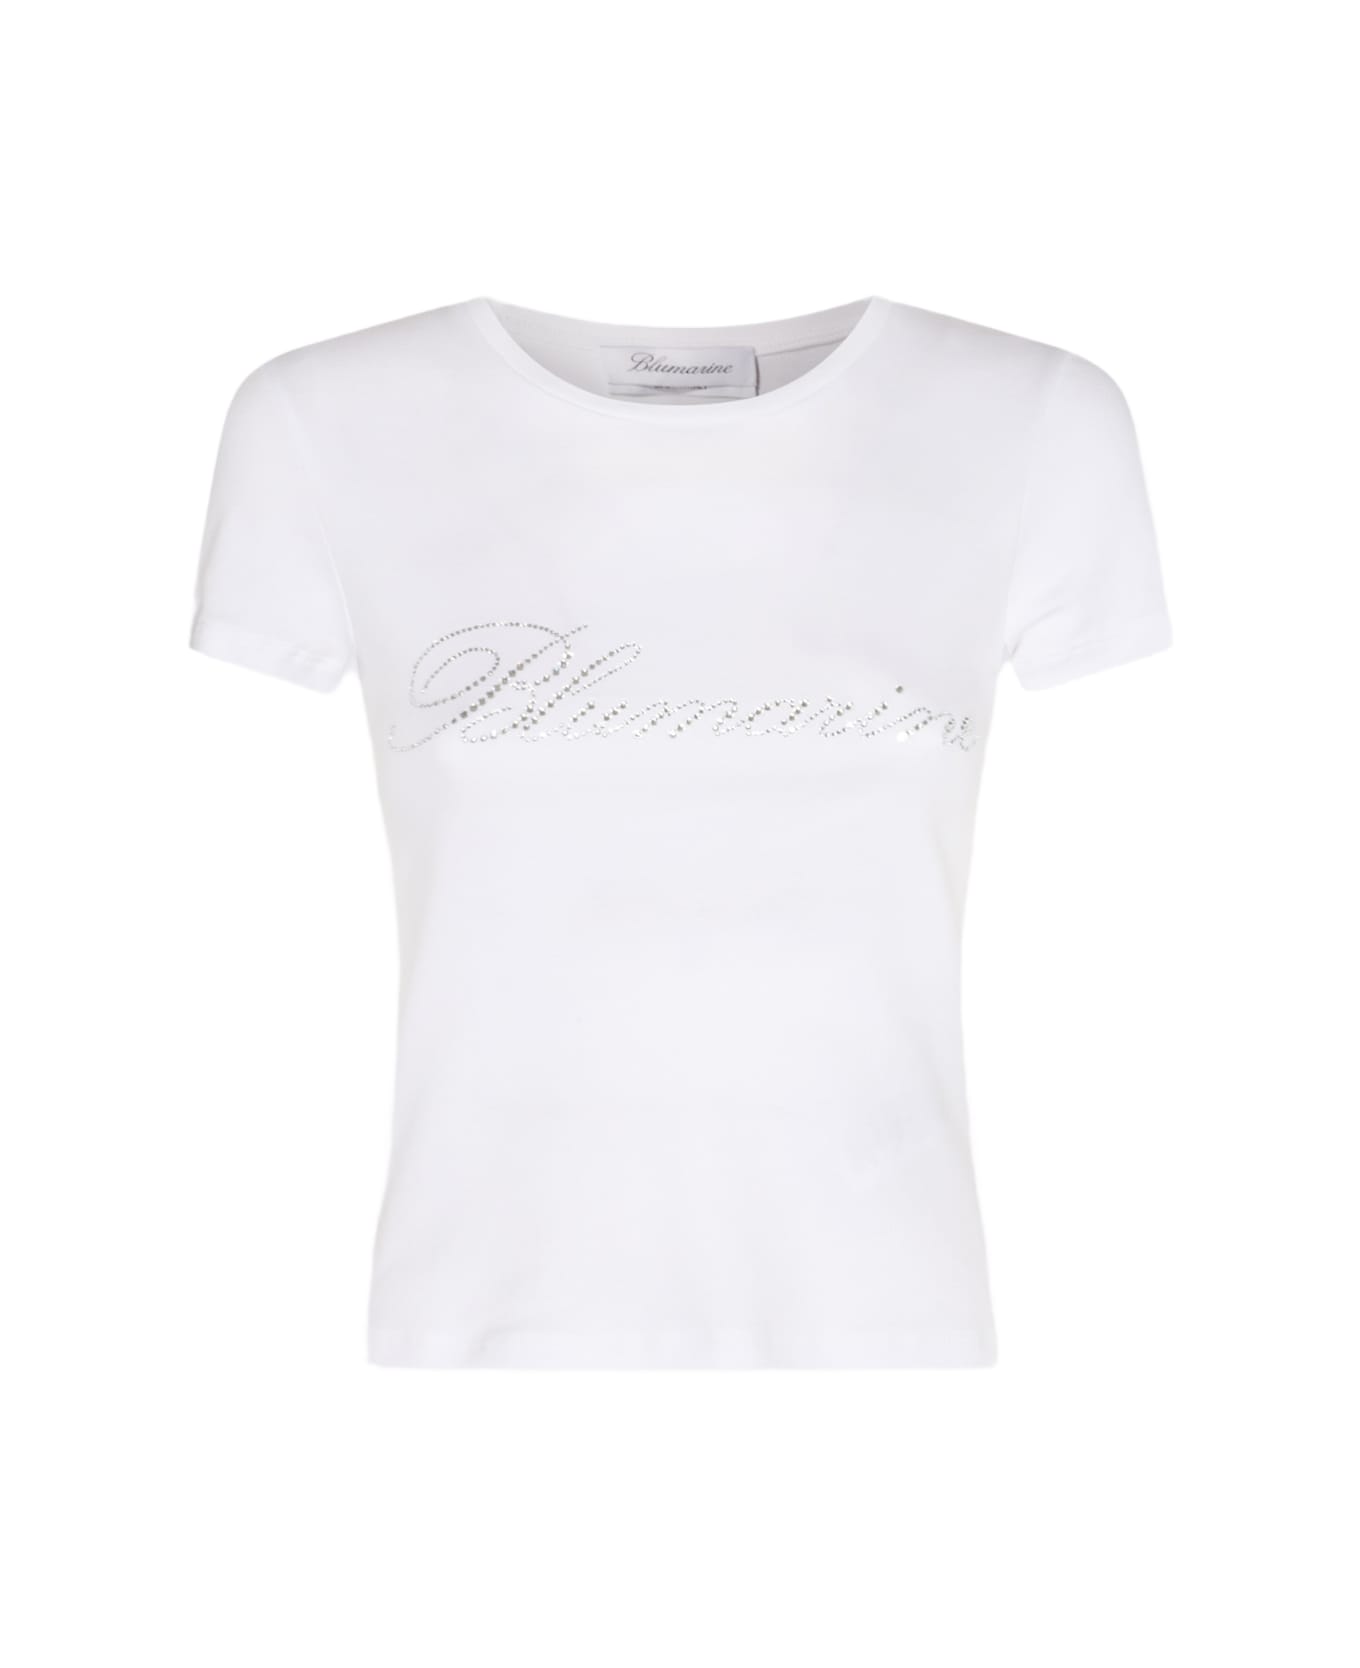 Blumarine White Cotton T-shirt - White Tシャツ